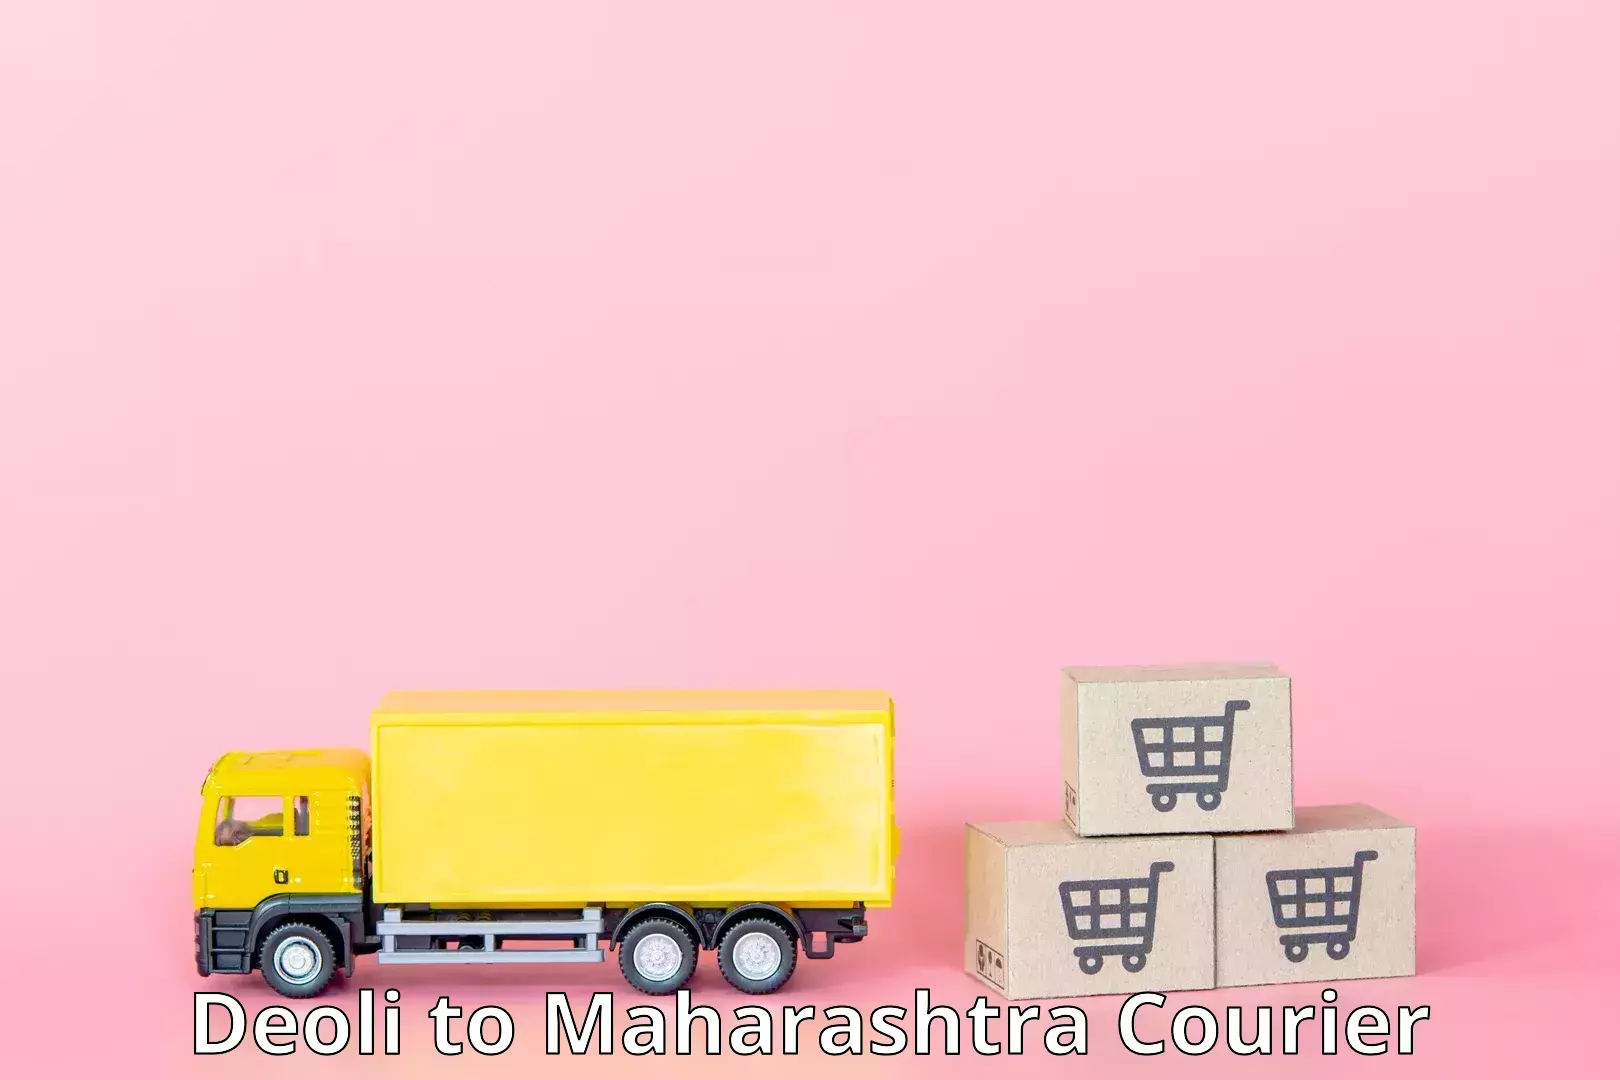 24/7 courier service Deoli to Maharashtra